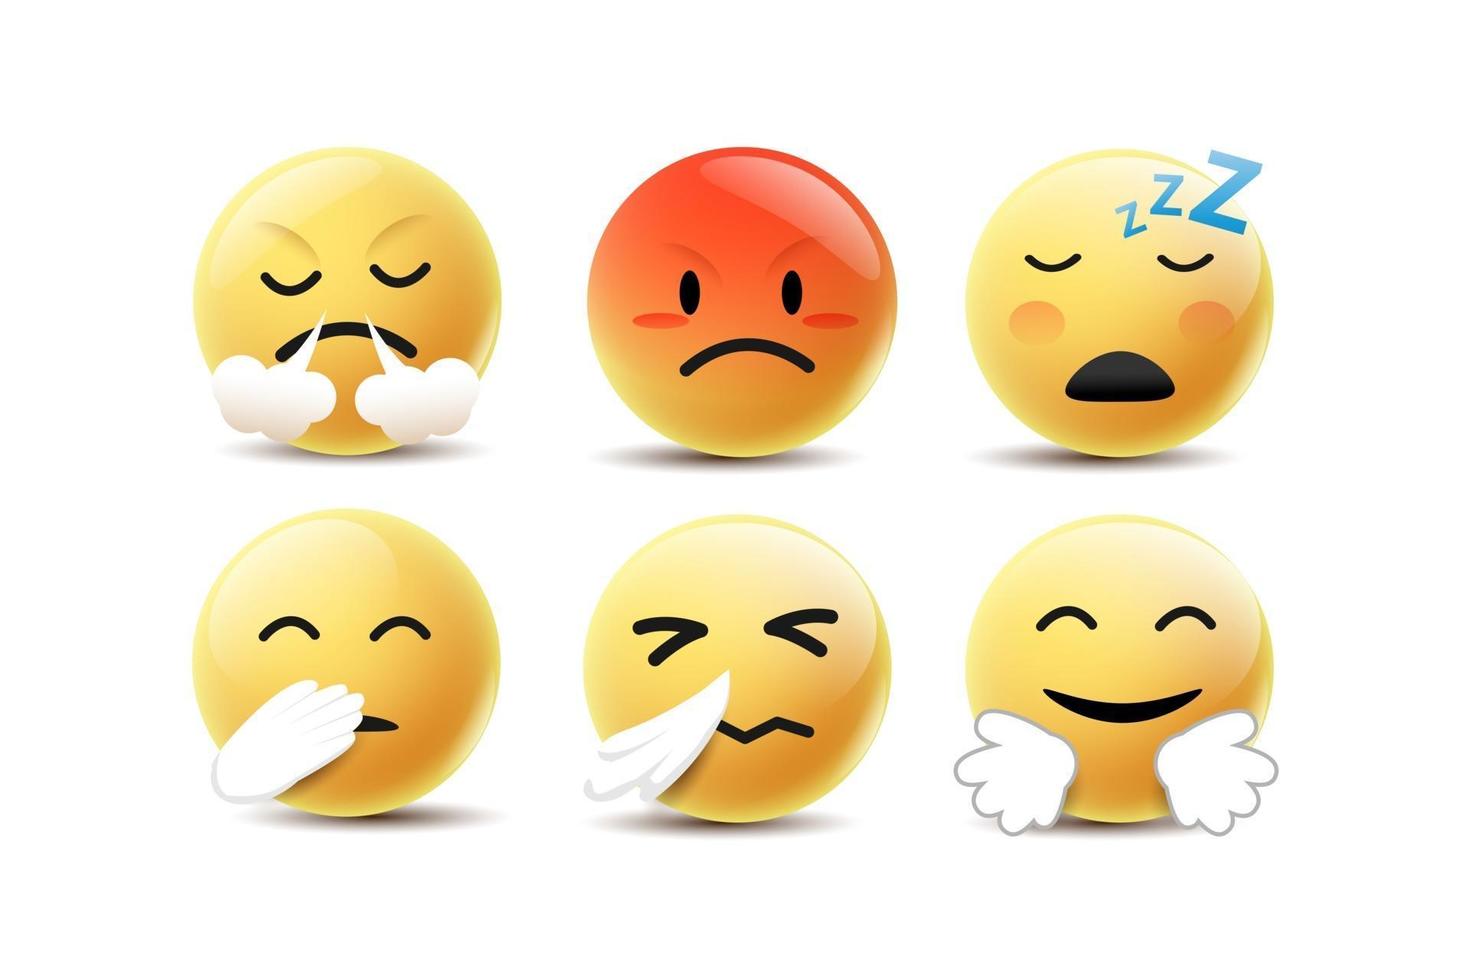 emoji ikon design med leende, arg, glad och en annan ansikts känslor. vektor